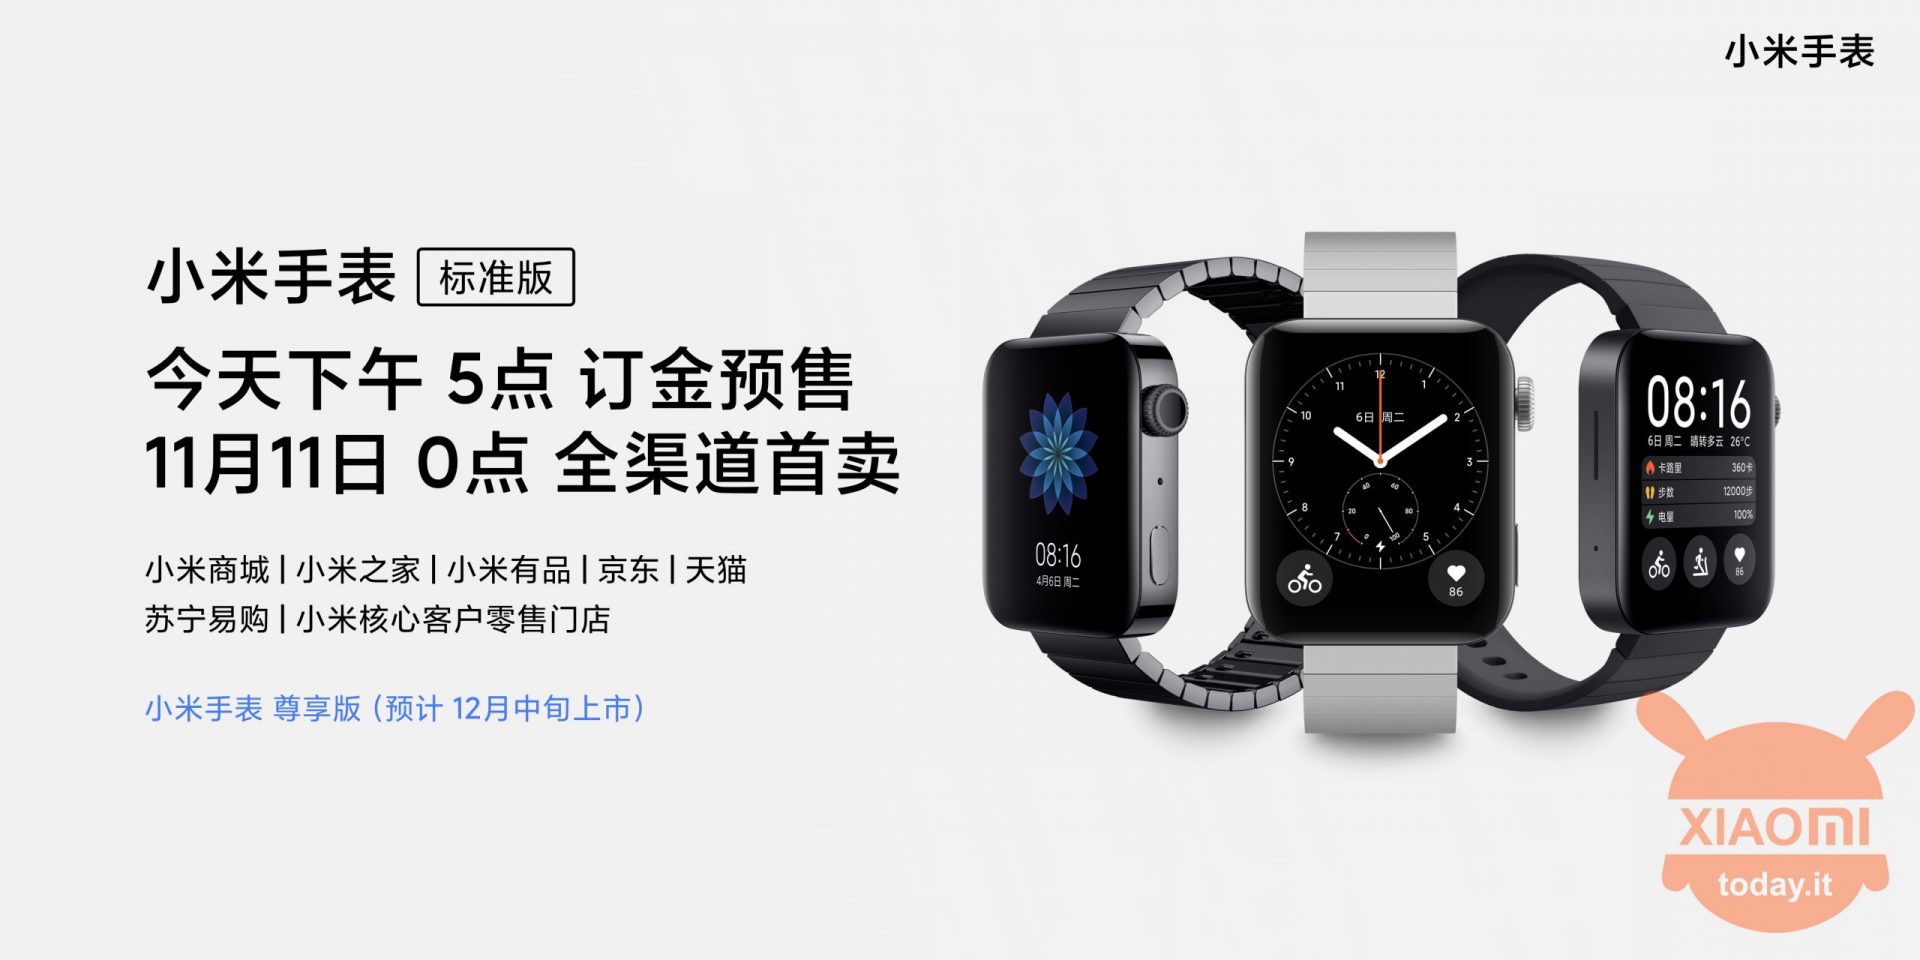 Xiaomi Mi Watch presentato con eSIM 4G e 36 ore di autonomia